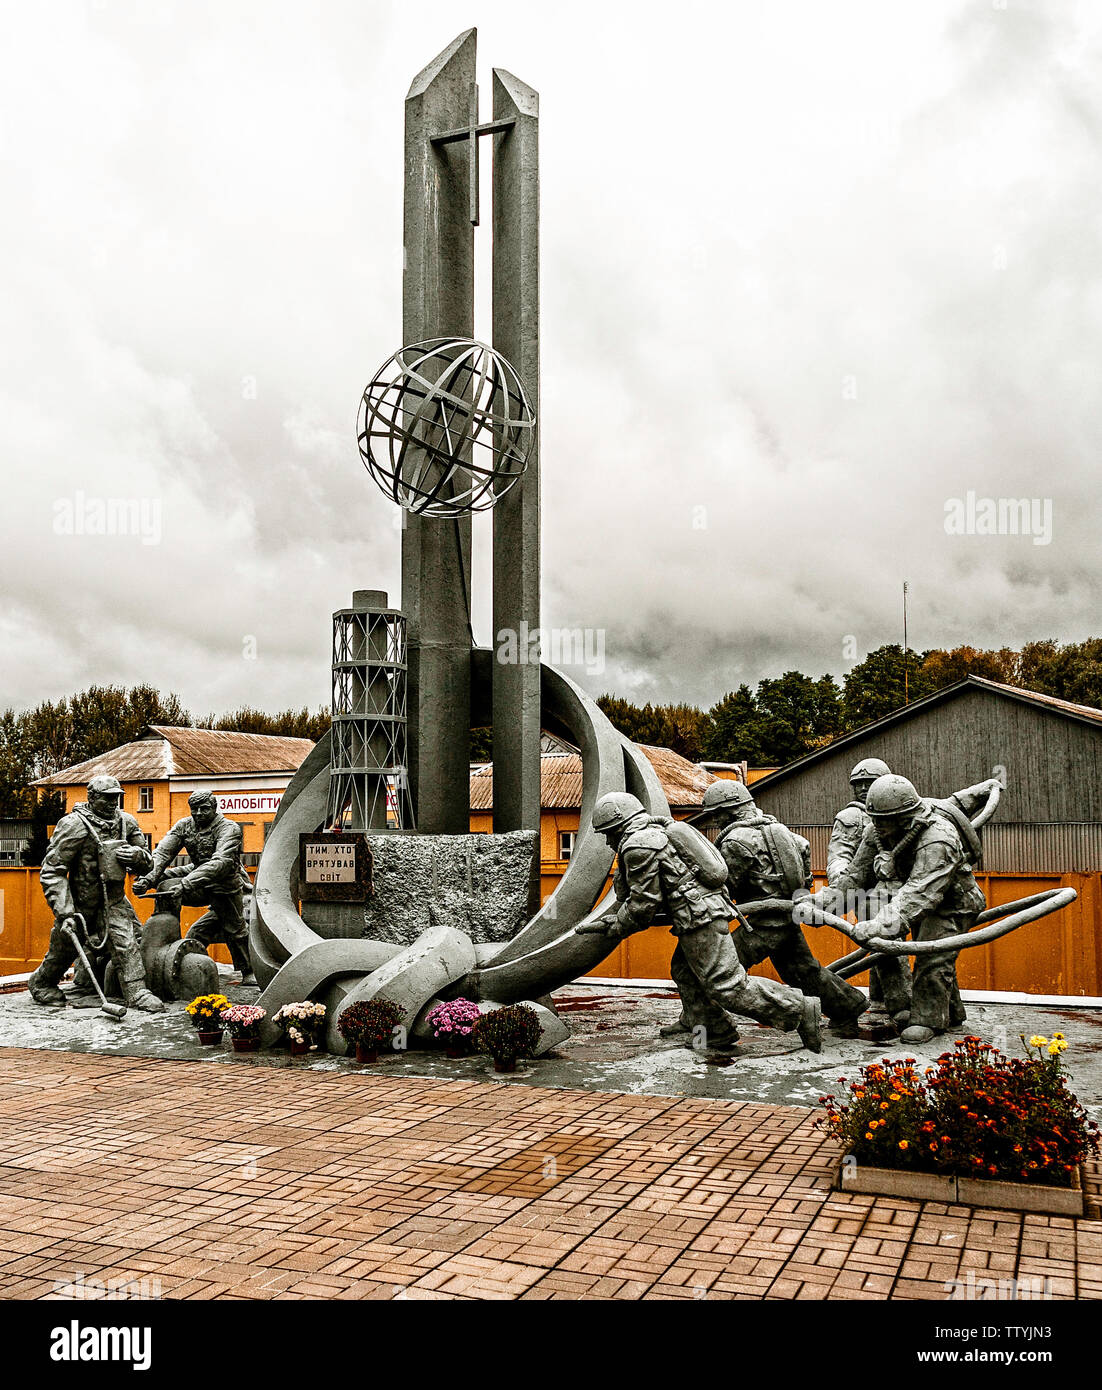 I Vigili del Fuoco di Chernobyl: Amonument. L'incidente nucleare si è verificata durante la sera del 26 aprile, 1986. Nulla di simile era mai accaduto prima. Cosa si può fare allora? I Vigili del fuoco sono stati inviati a trattare con gli sconosciuti e entro pochi giorni erano tutti morti. Radiazione. Questo eloquant e ben mantenuto un monumento è un omaggio al loro coraggio. 22 vite di giovani andati. Il primo di molti. Quelli in carica non sapevo cosa fare, essi erano spaventati di raccontare Gorbaciov. Egli ha scoperto la mattina successiva con una telefonata dal presidente svedese, chiedendo di un radio active cloud provenienti da Ucraina Foto Stock